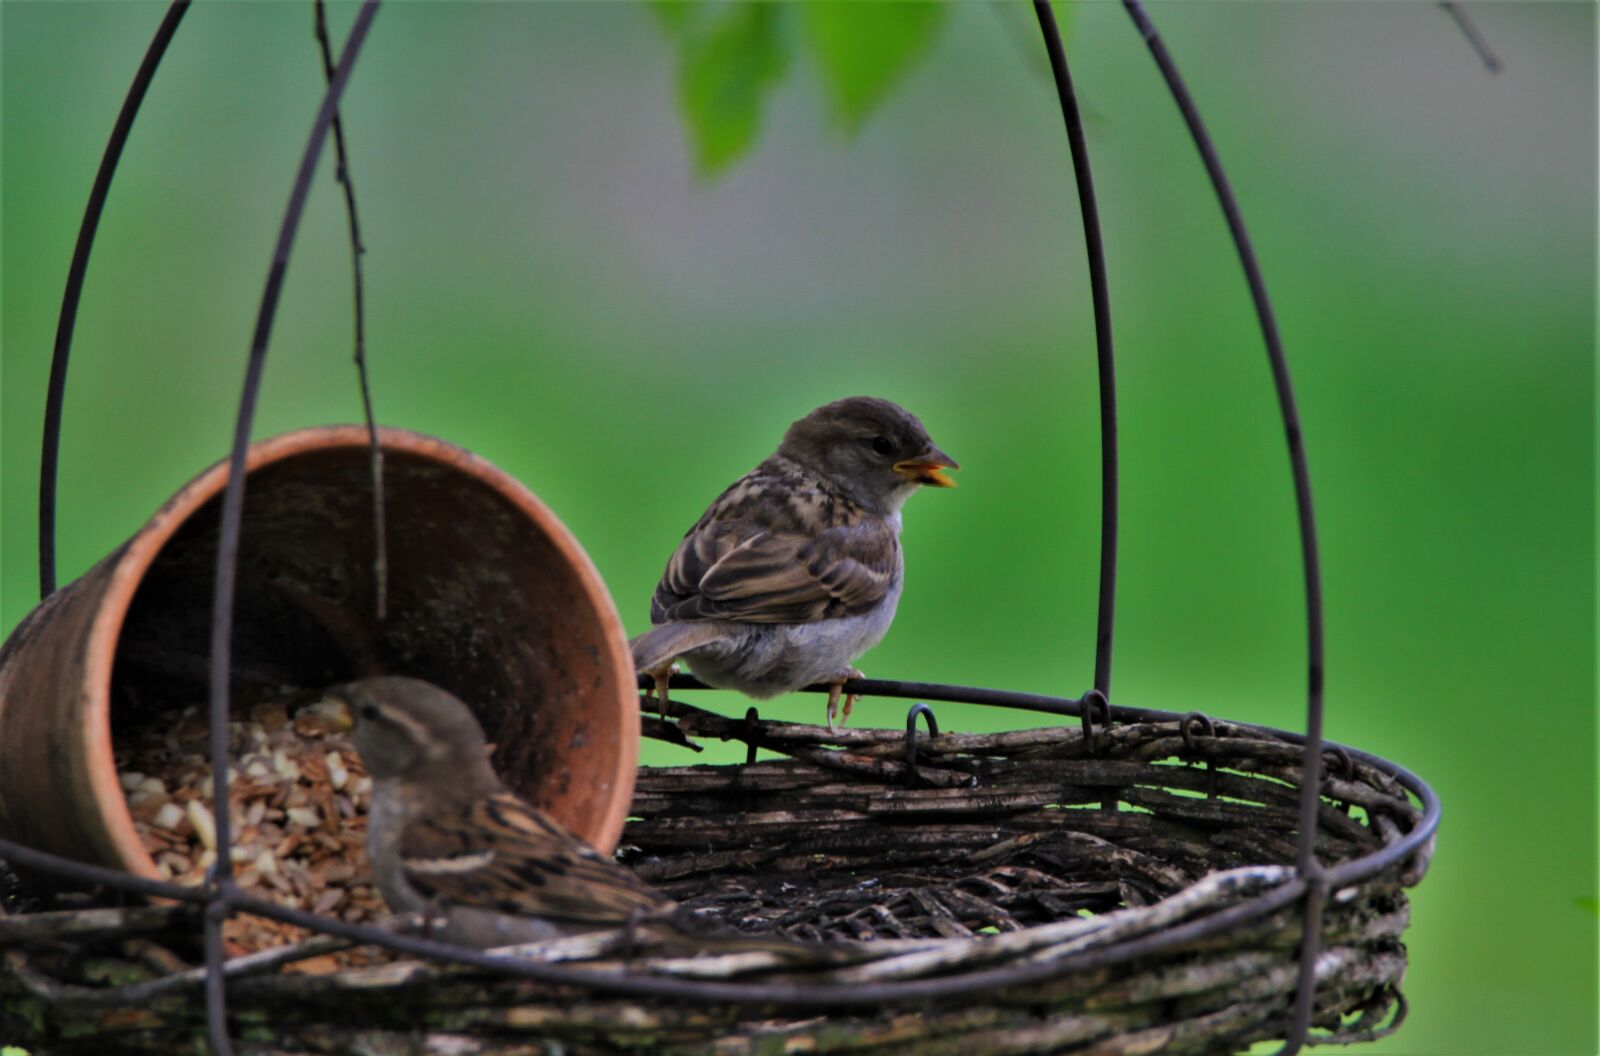 Canon EOS 7D sample photo. Chaffinch, bird, songbird photography